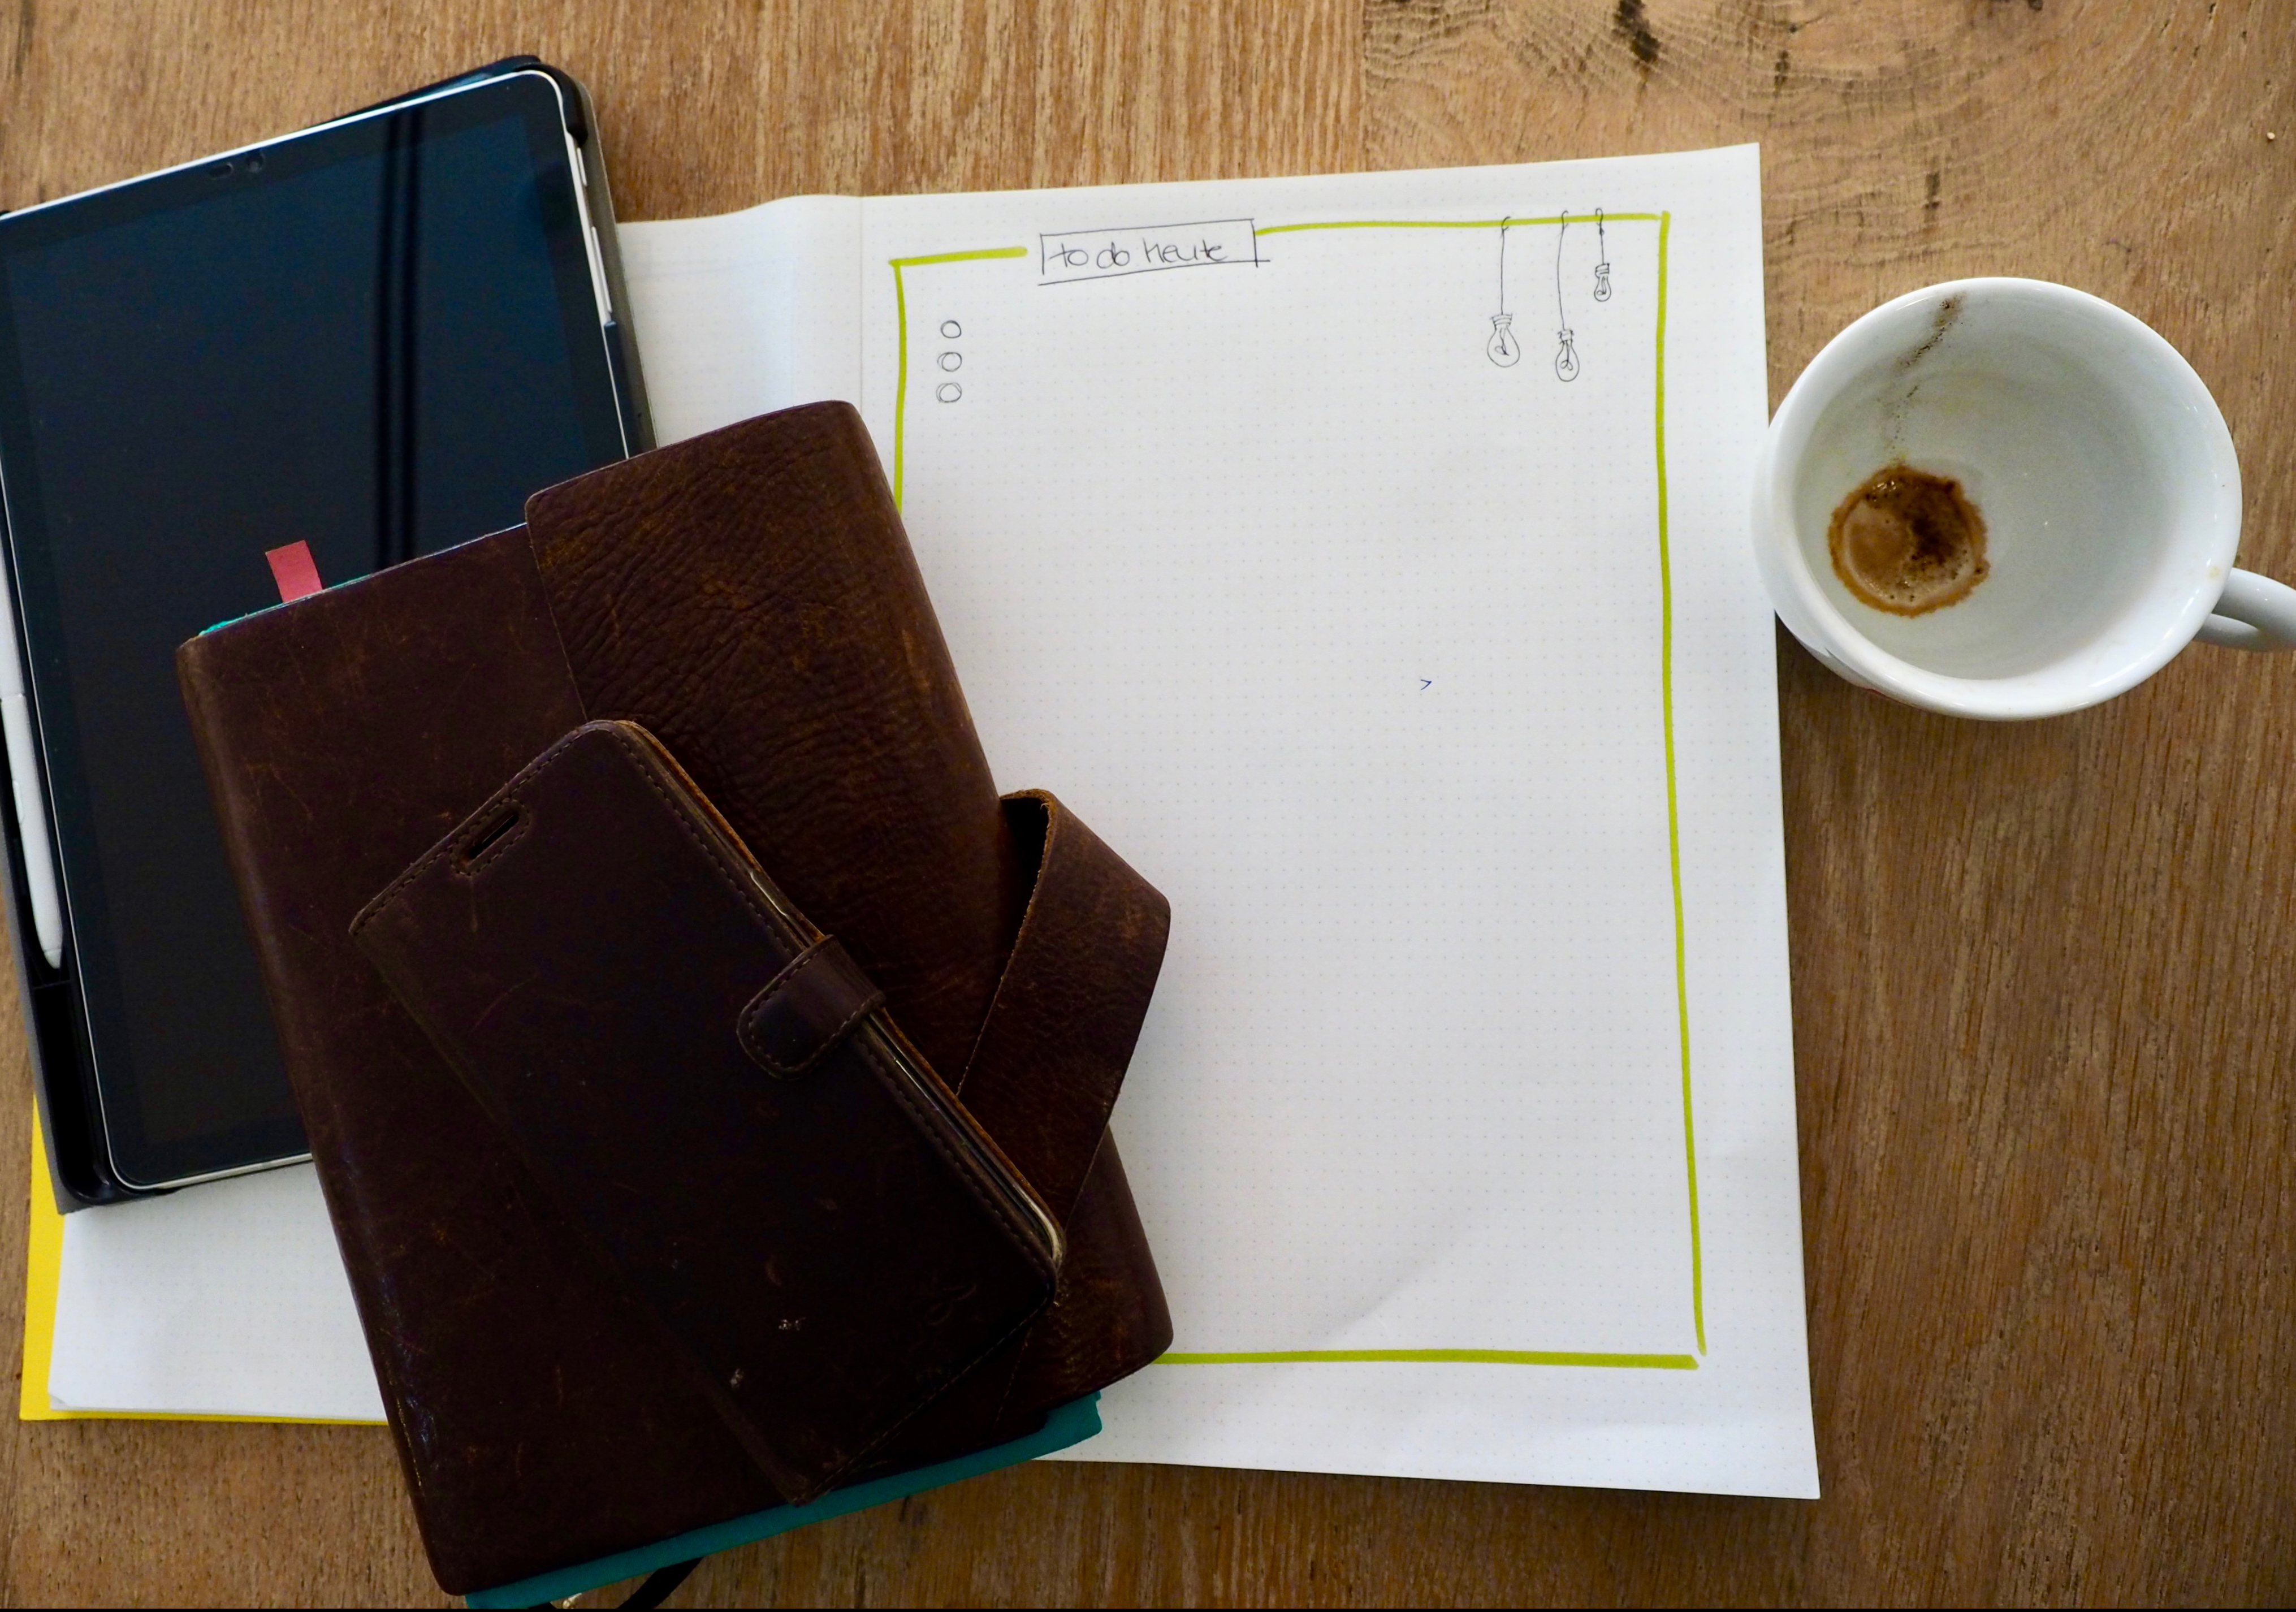 Frau Bevers Arbeitsmaterialien – ein Block, Tablet, Smartphone und Kalender – liegen neben einer Kaffetasse auf einem Holztisch